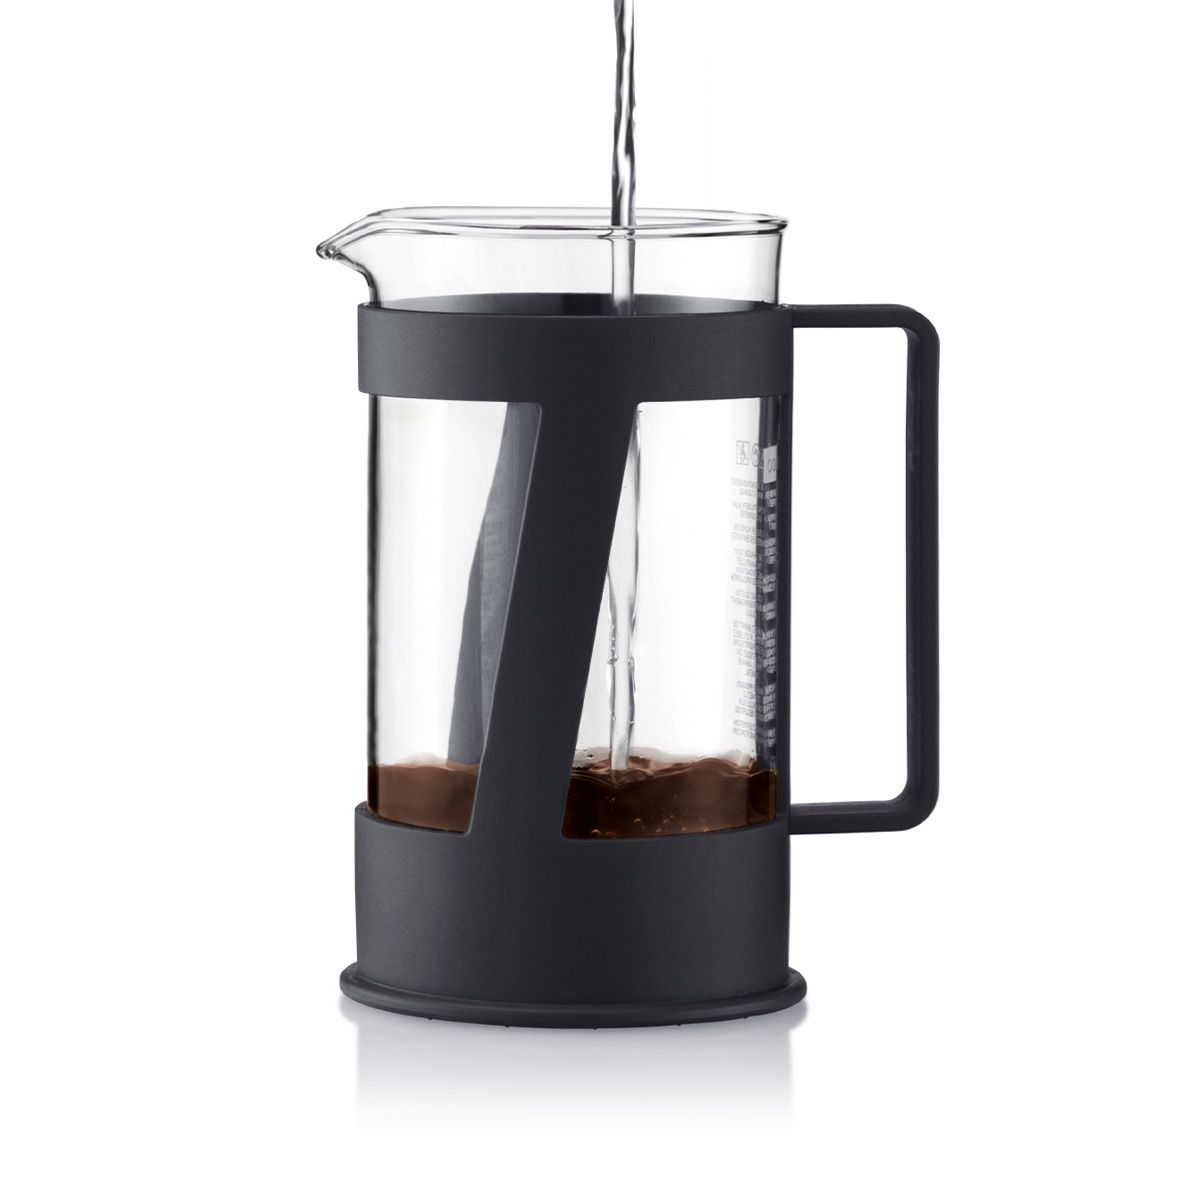 Bodum Crema Kaffeemaschine schwarz, 8 Tassen